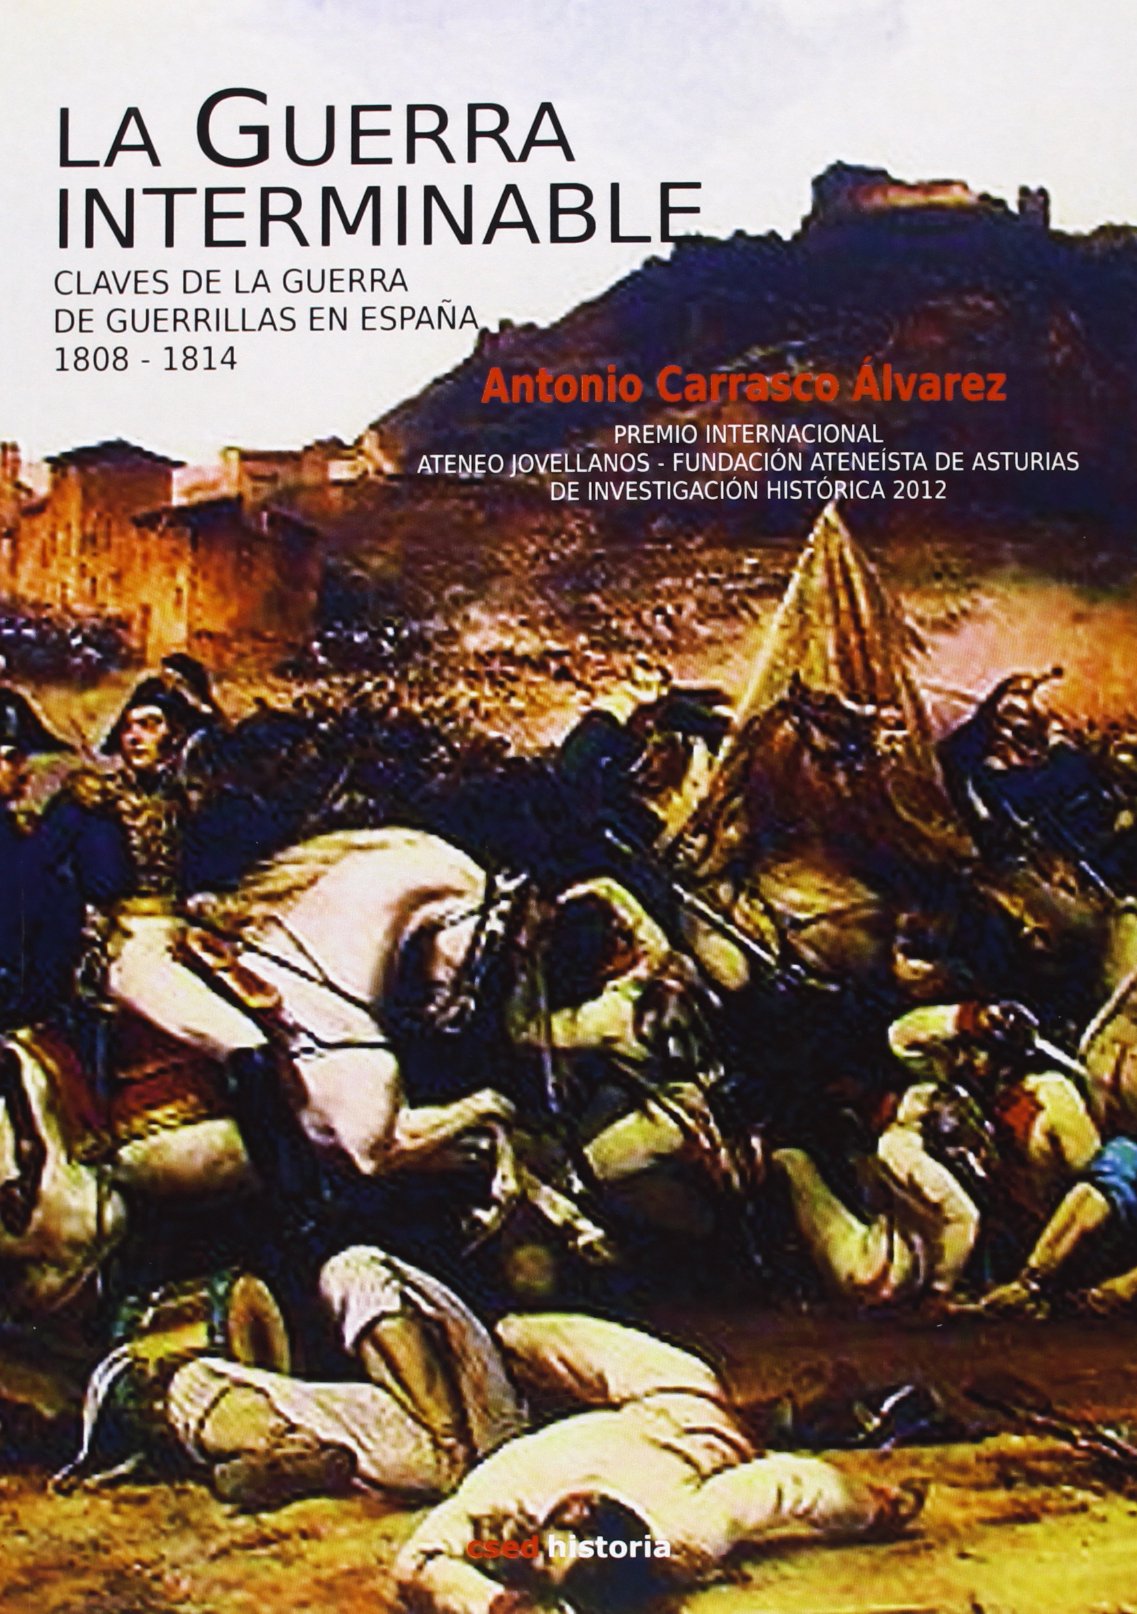 La guerra interminable. Claves de la guerra de guerrillas en España 1808-1814